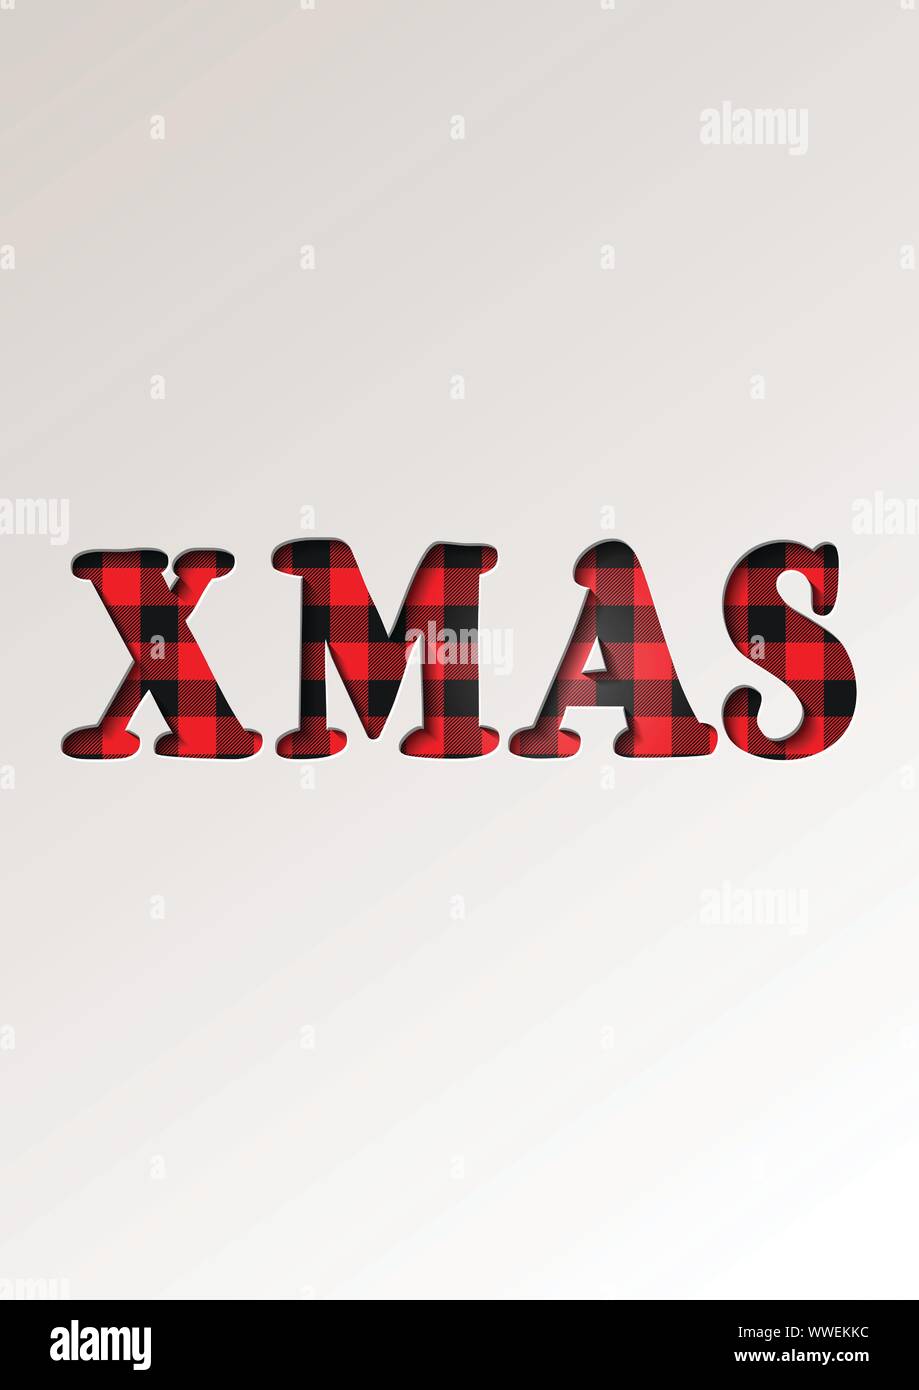 Papier schneiden Stil Weihnachten Grußkarten winter saisonale Feiertage - Weihnachten text auf Tartan karierte Karierte-Vector Illustration Stock Vektor